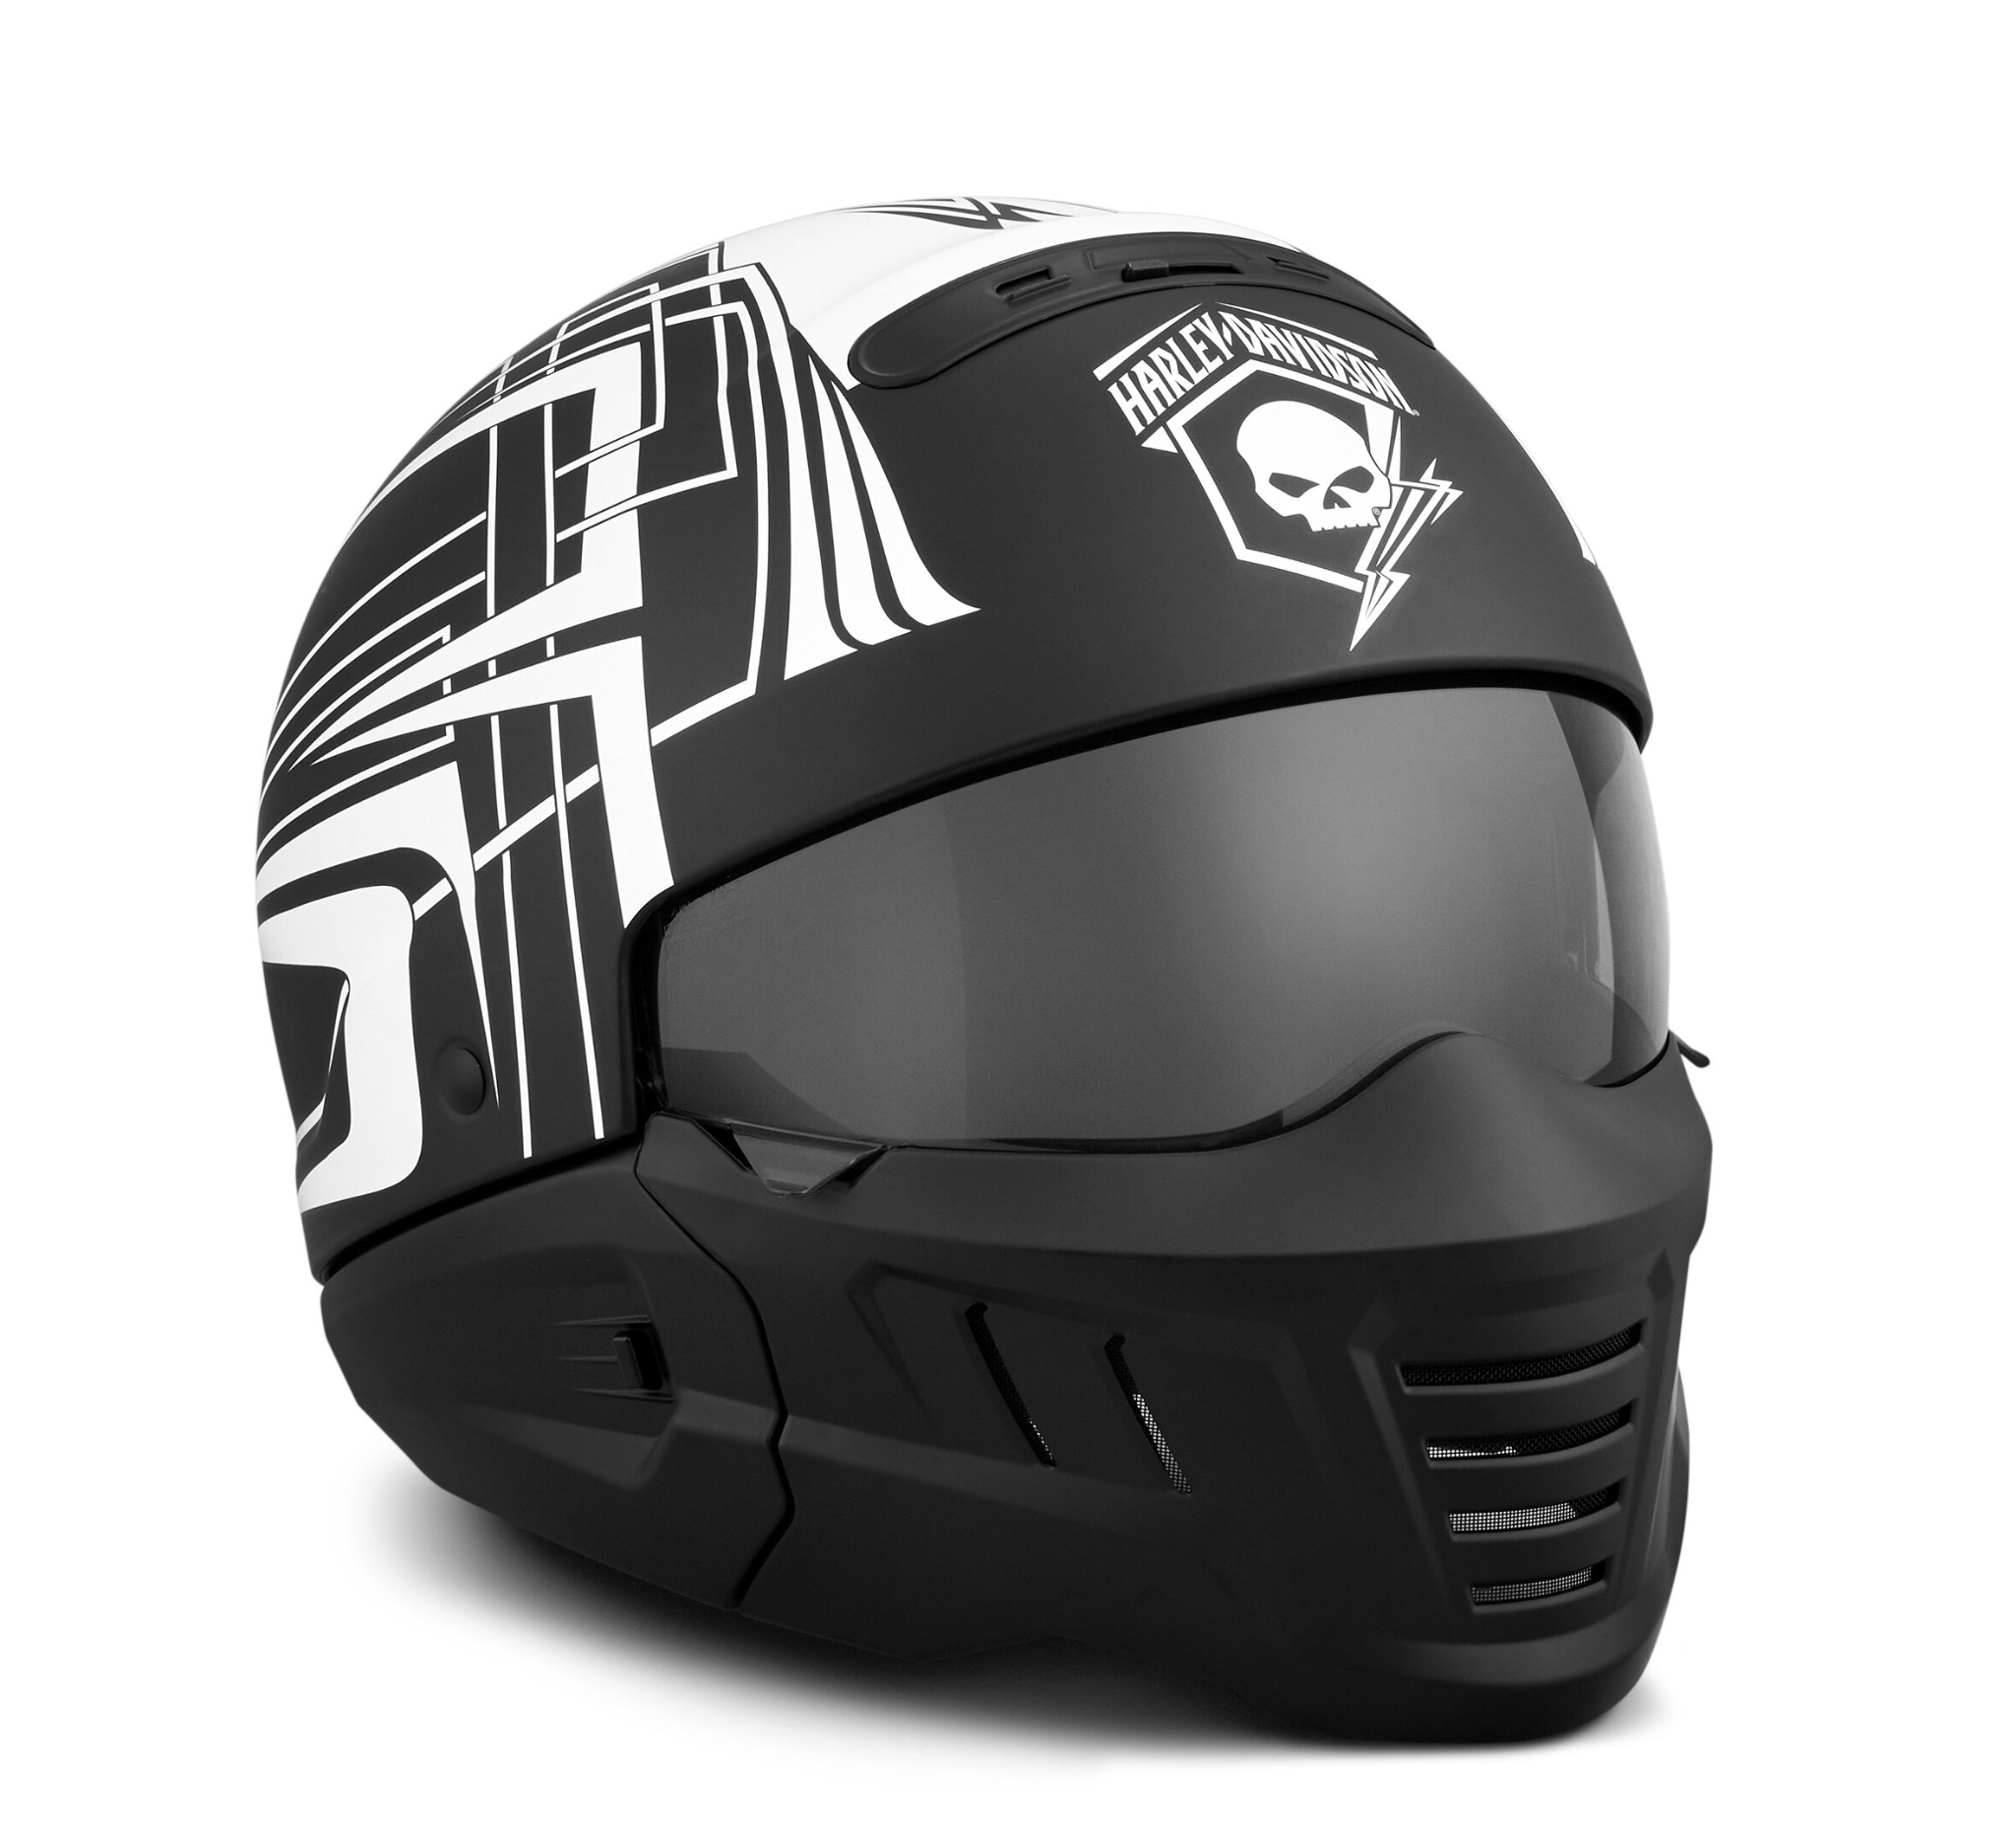 Skull Lightning 3 In 1 X04 Helmet 98297 19vx Harley Davidson Usa